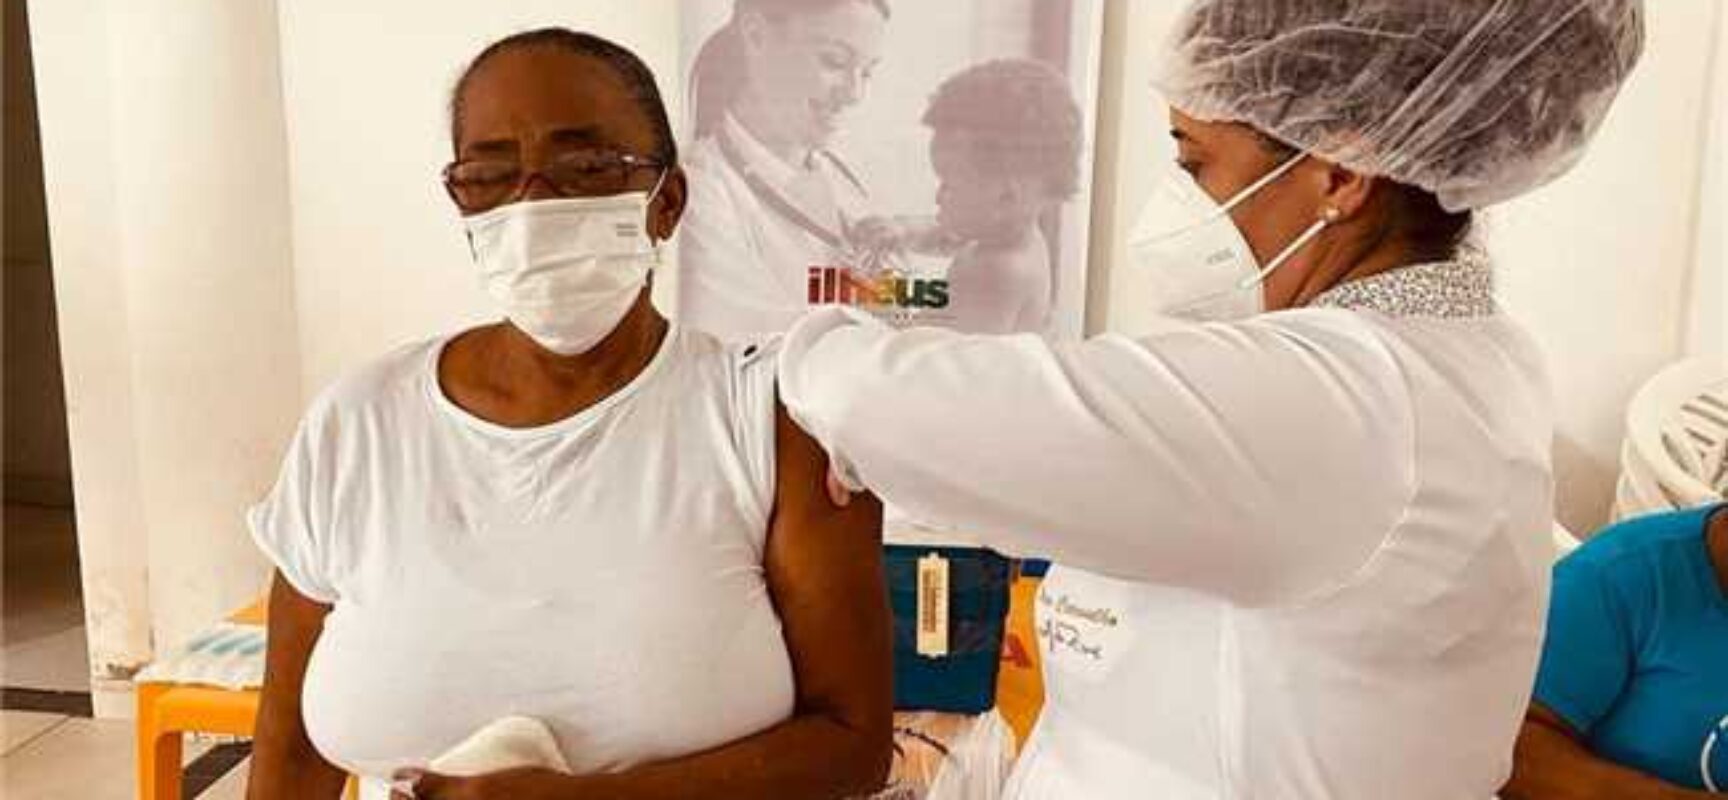 Covid-19: Prefeitura de Ilhéus reforça campanha e disponibiliza 14 pontos de vacinação no município